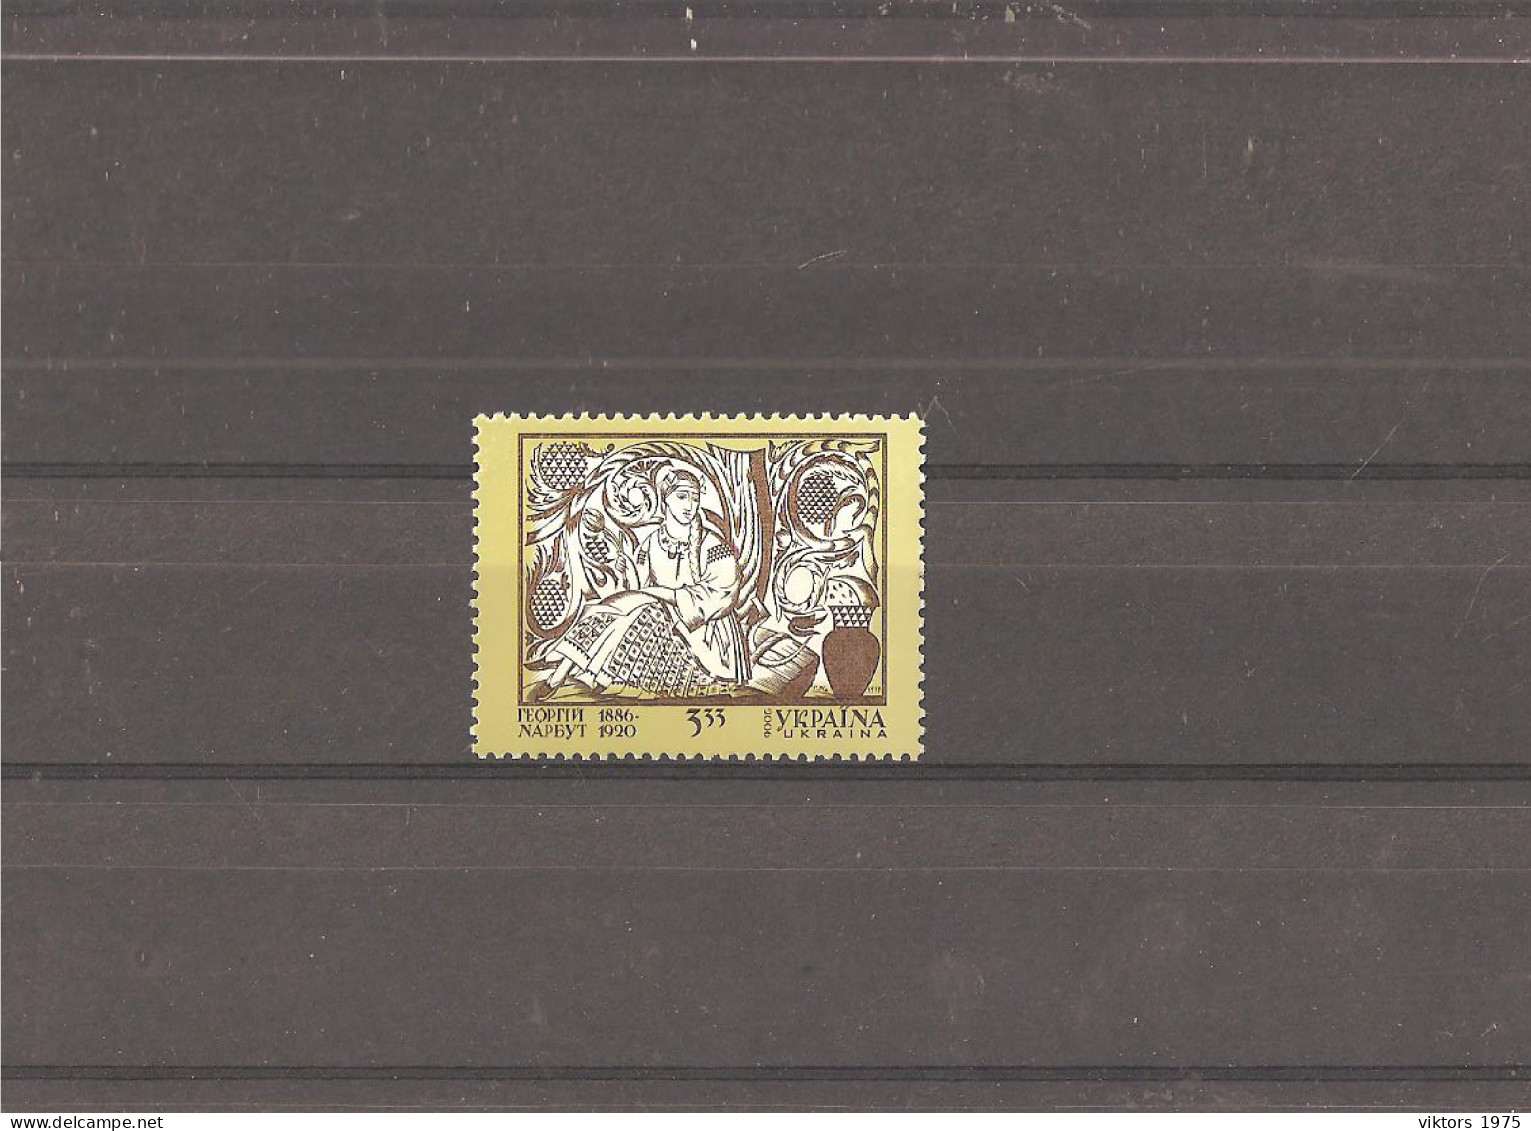 MNH Stamp Nr.769 In MICHEL Catalog - Ukraine